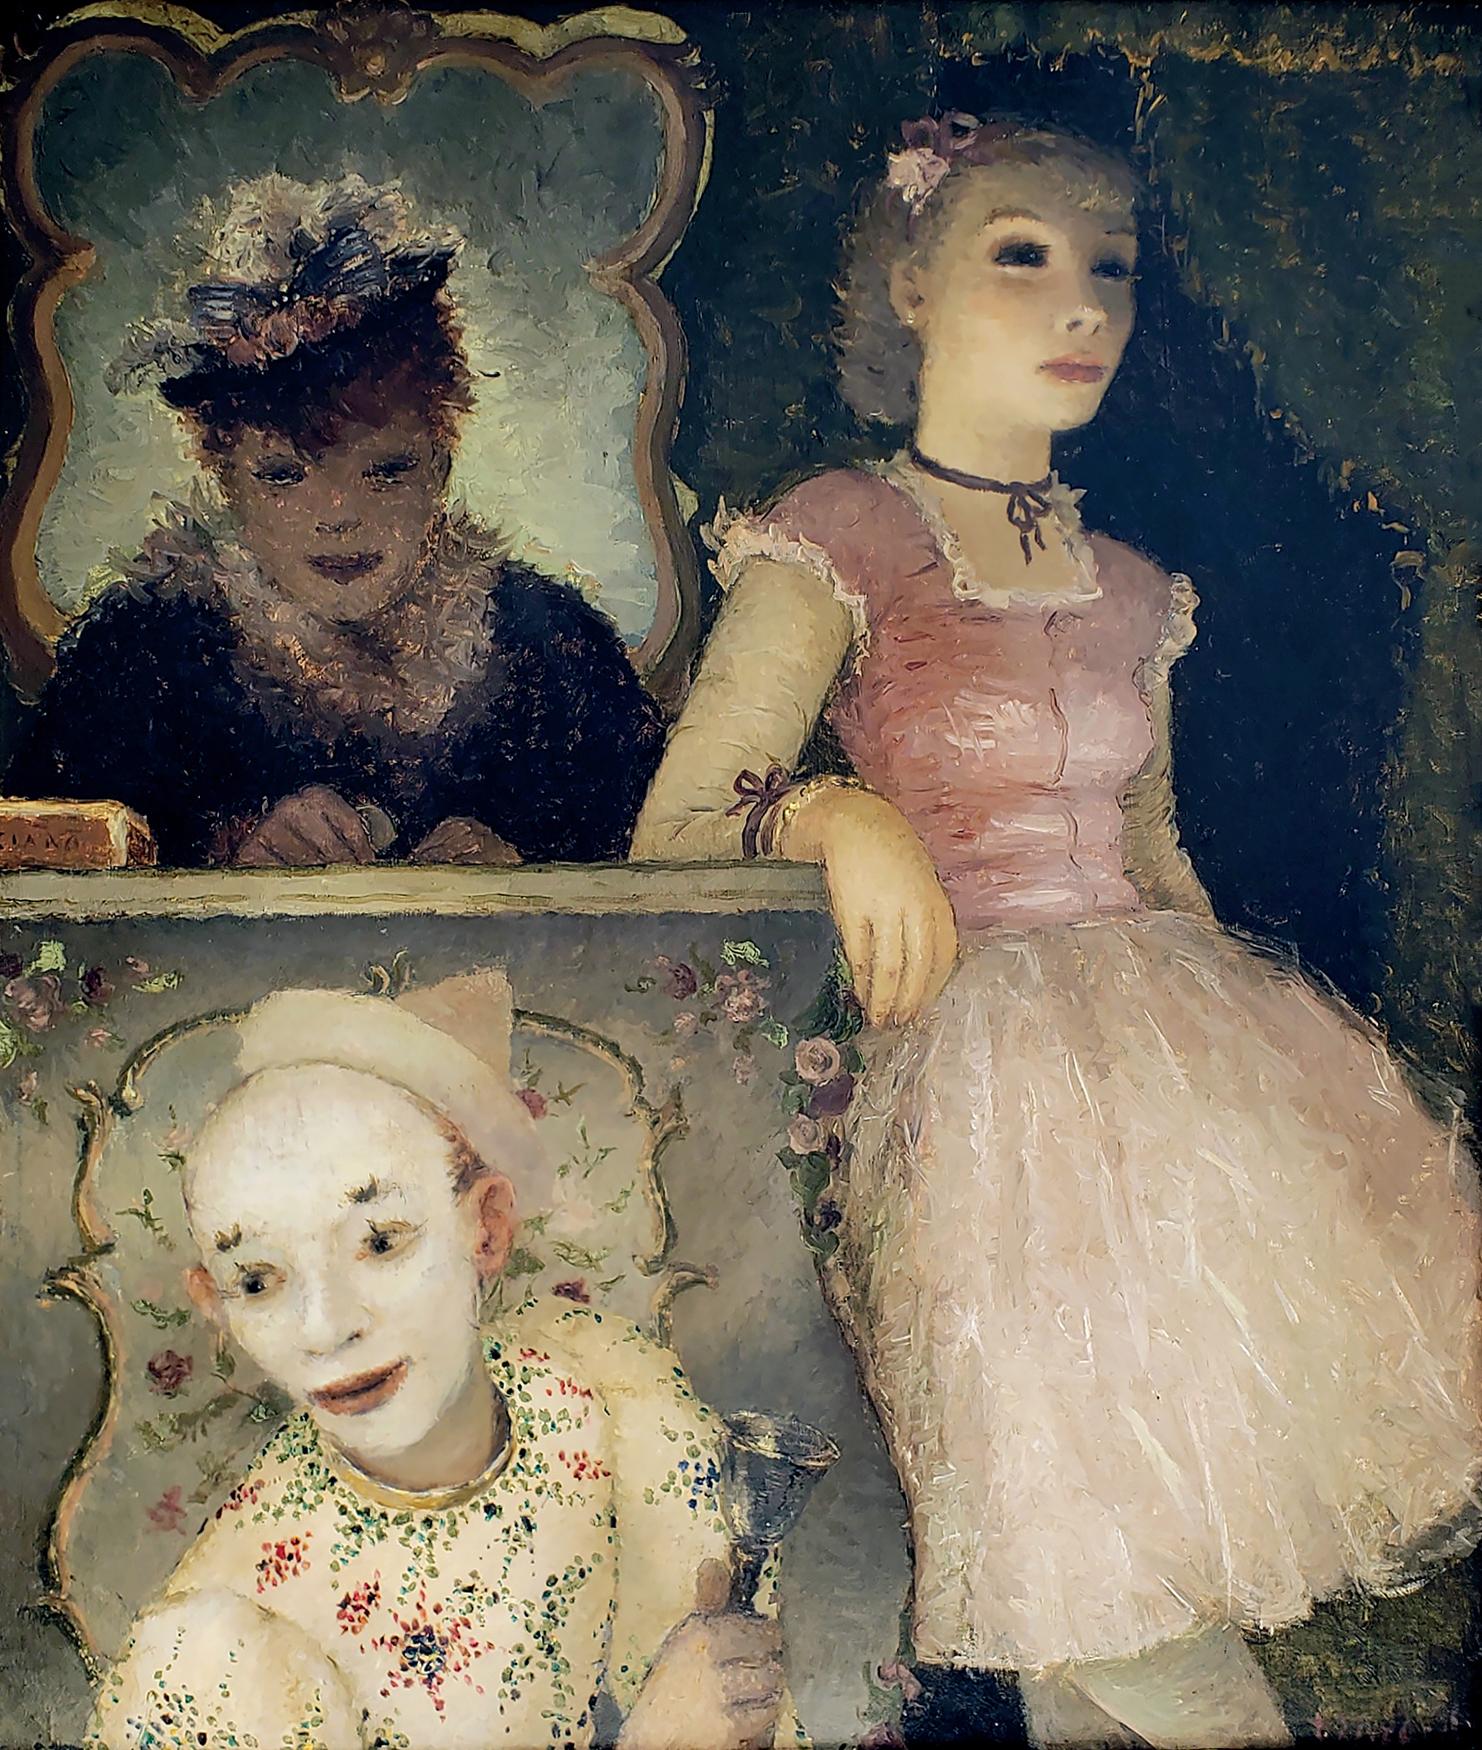 Ballerina, Clown and  Festival Performers - like Edgar Degas